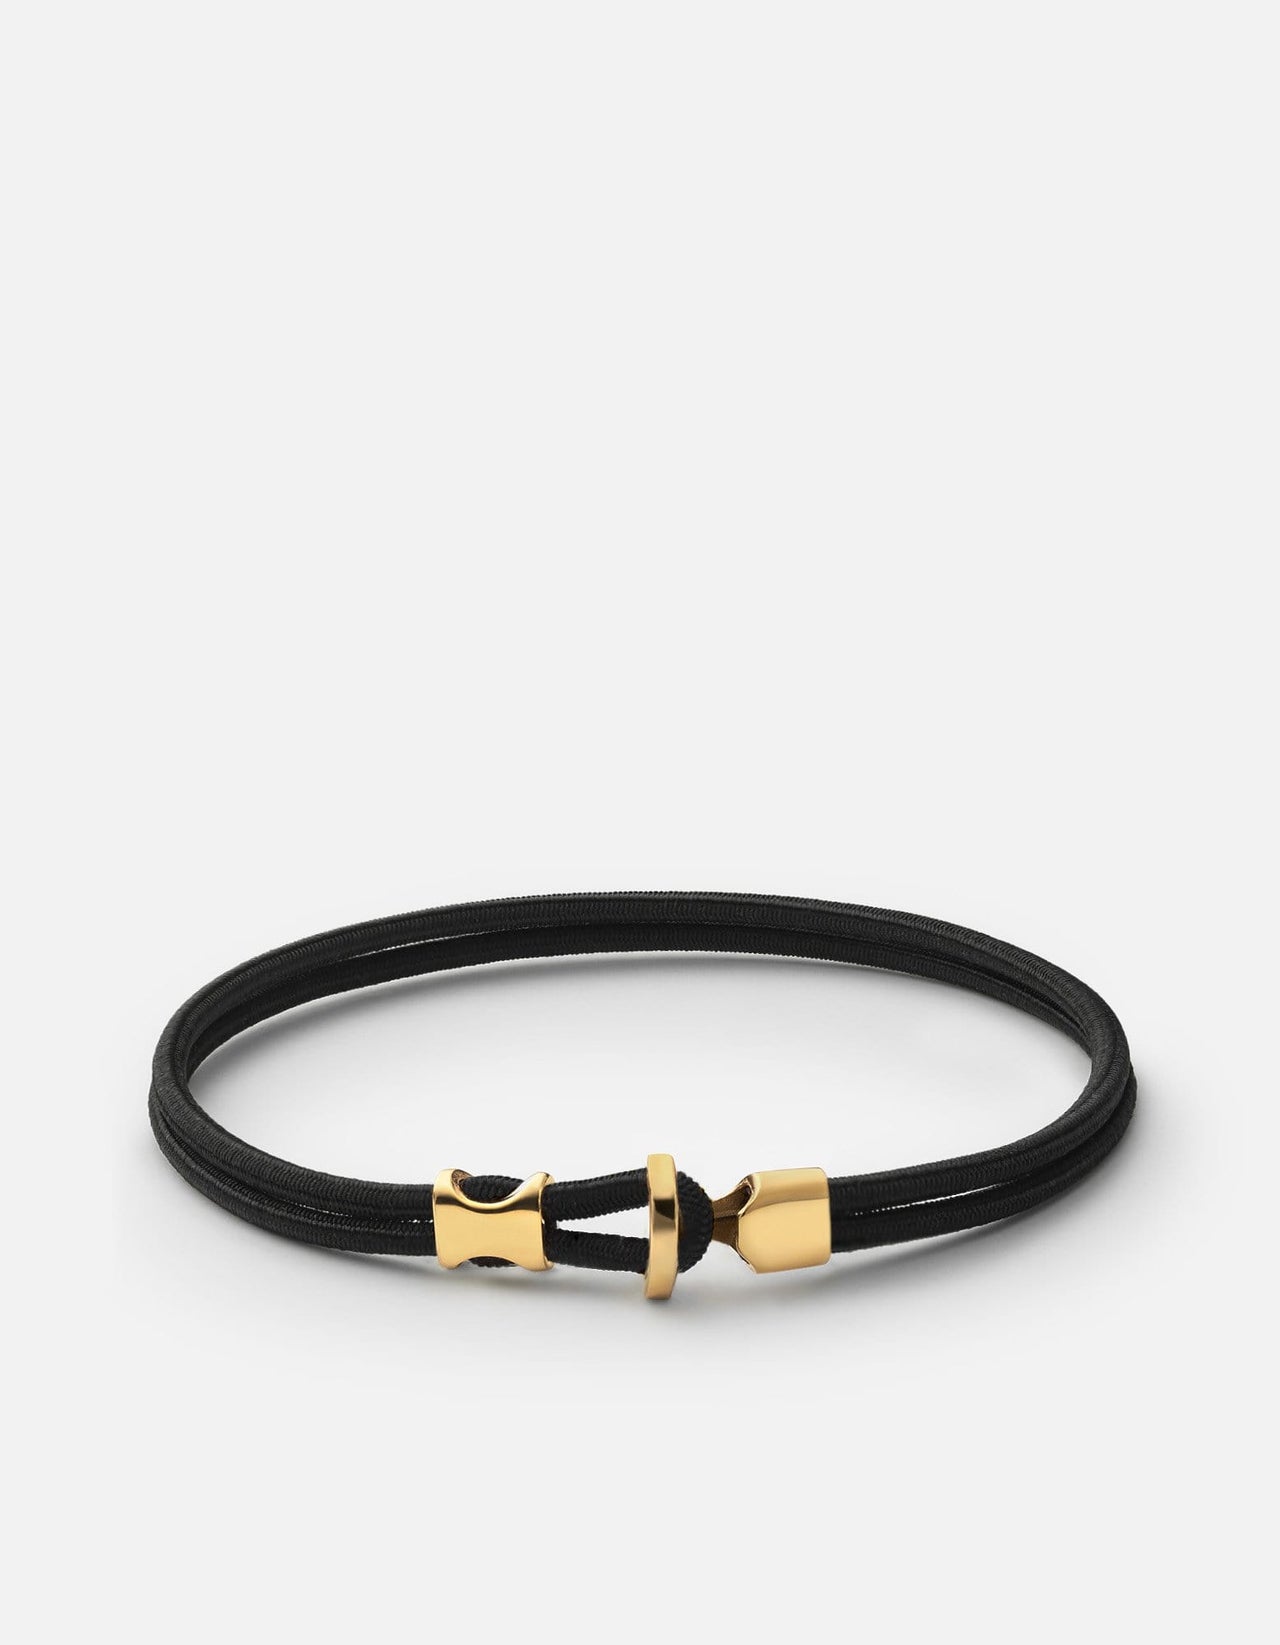 Buy Silver Bracelet Women, Women's Bracelet 2.5mm Rope Chain, Thin 18K Gold Rope  Bracelet Link, Silver Bracelet Minimalist by Twistedpendant Online in India  - Etsy